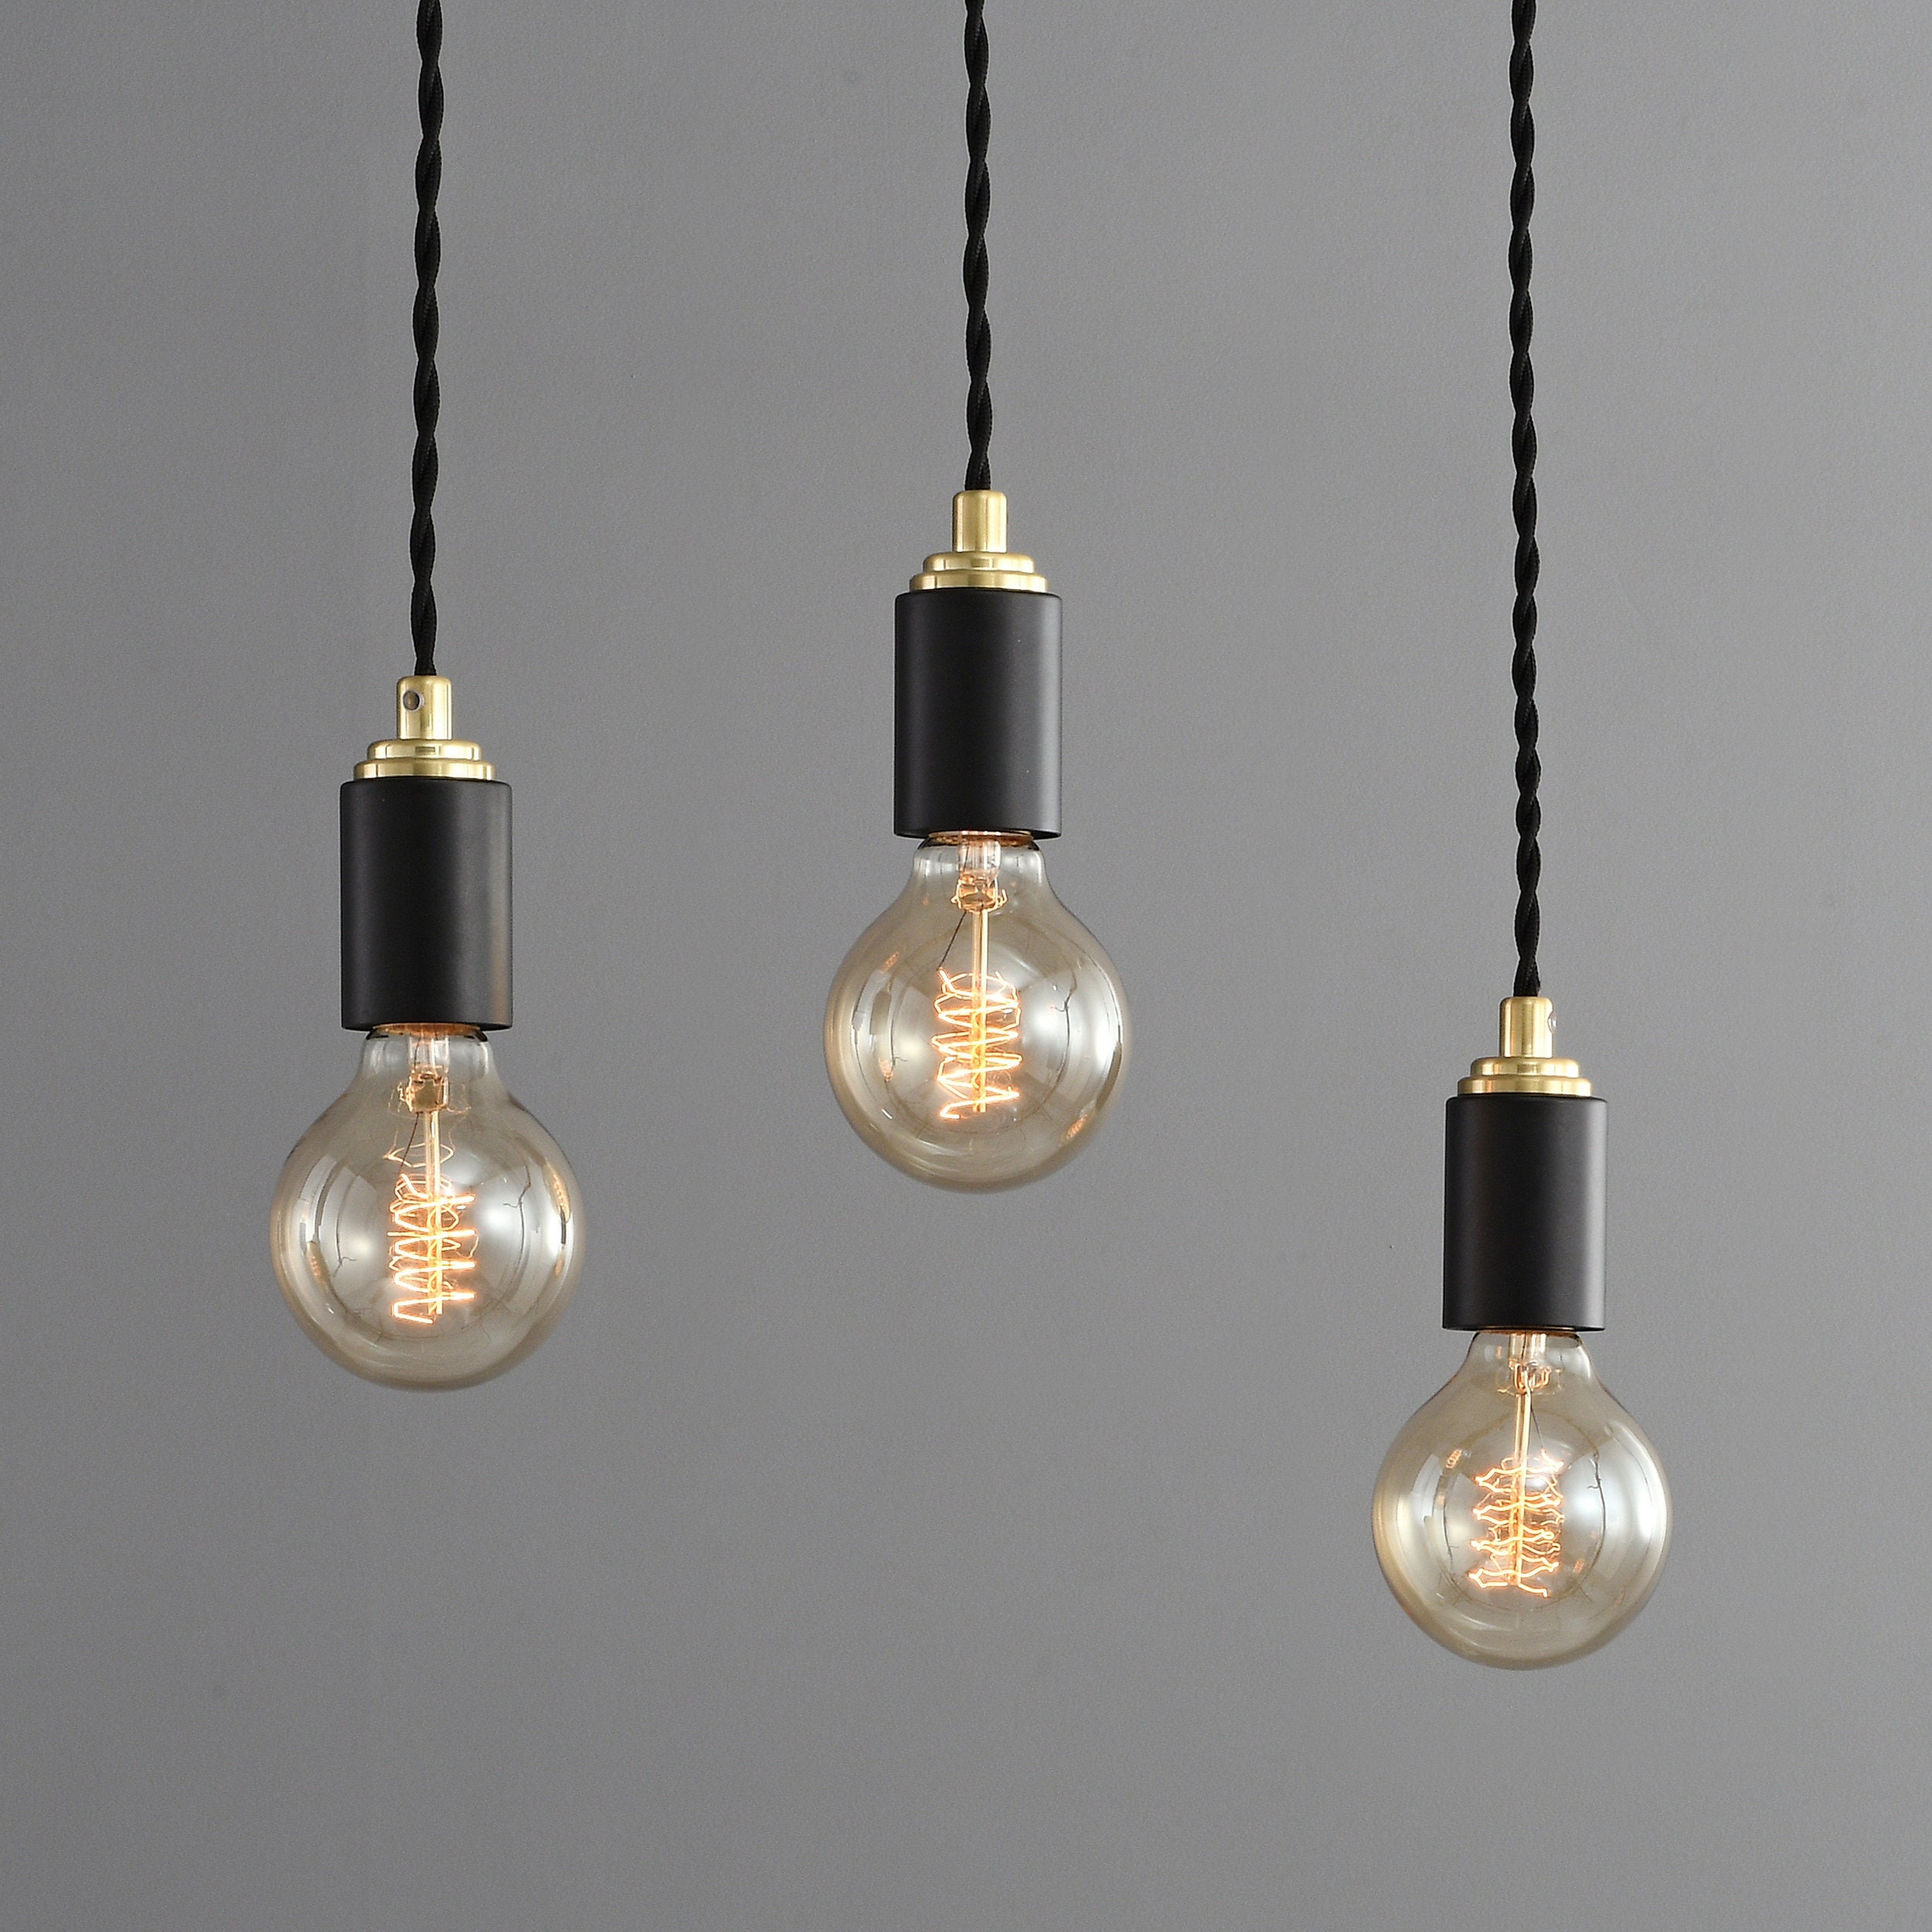 19+ Light Fixtures Edison Bulbs